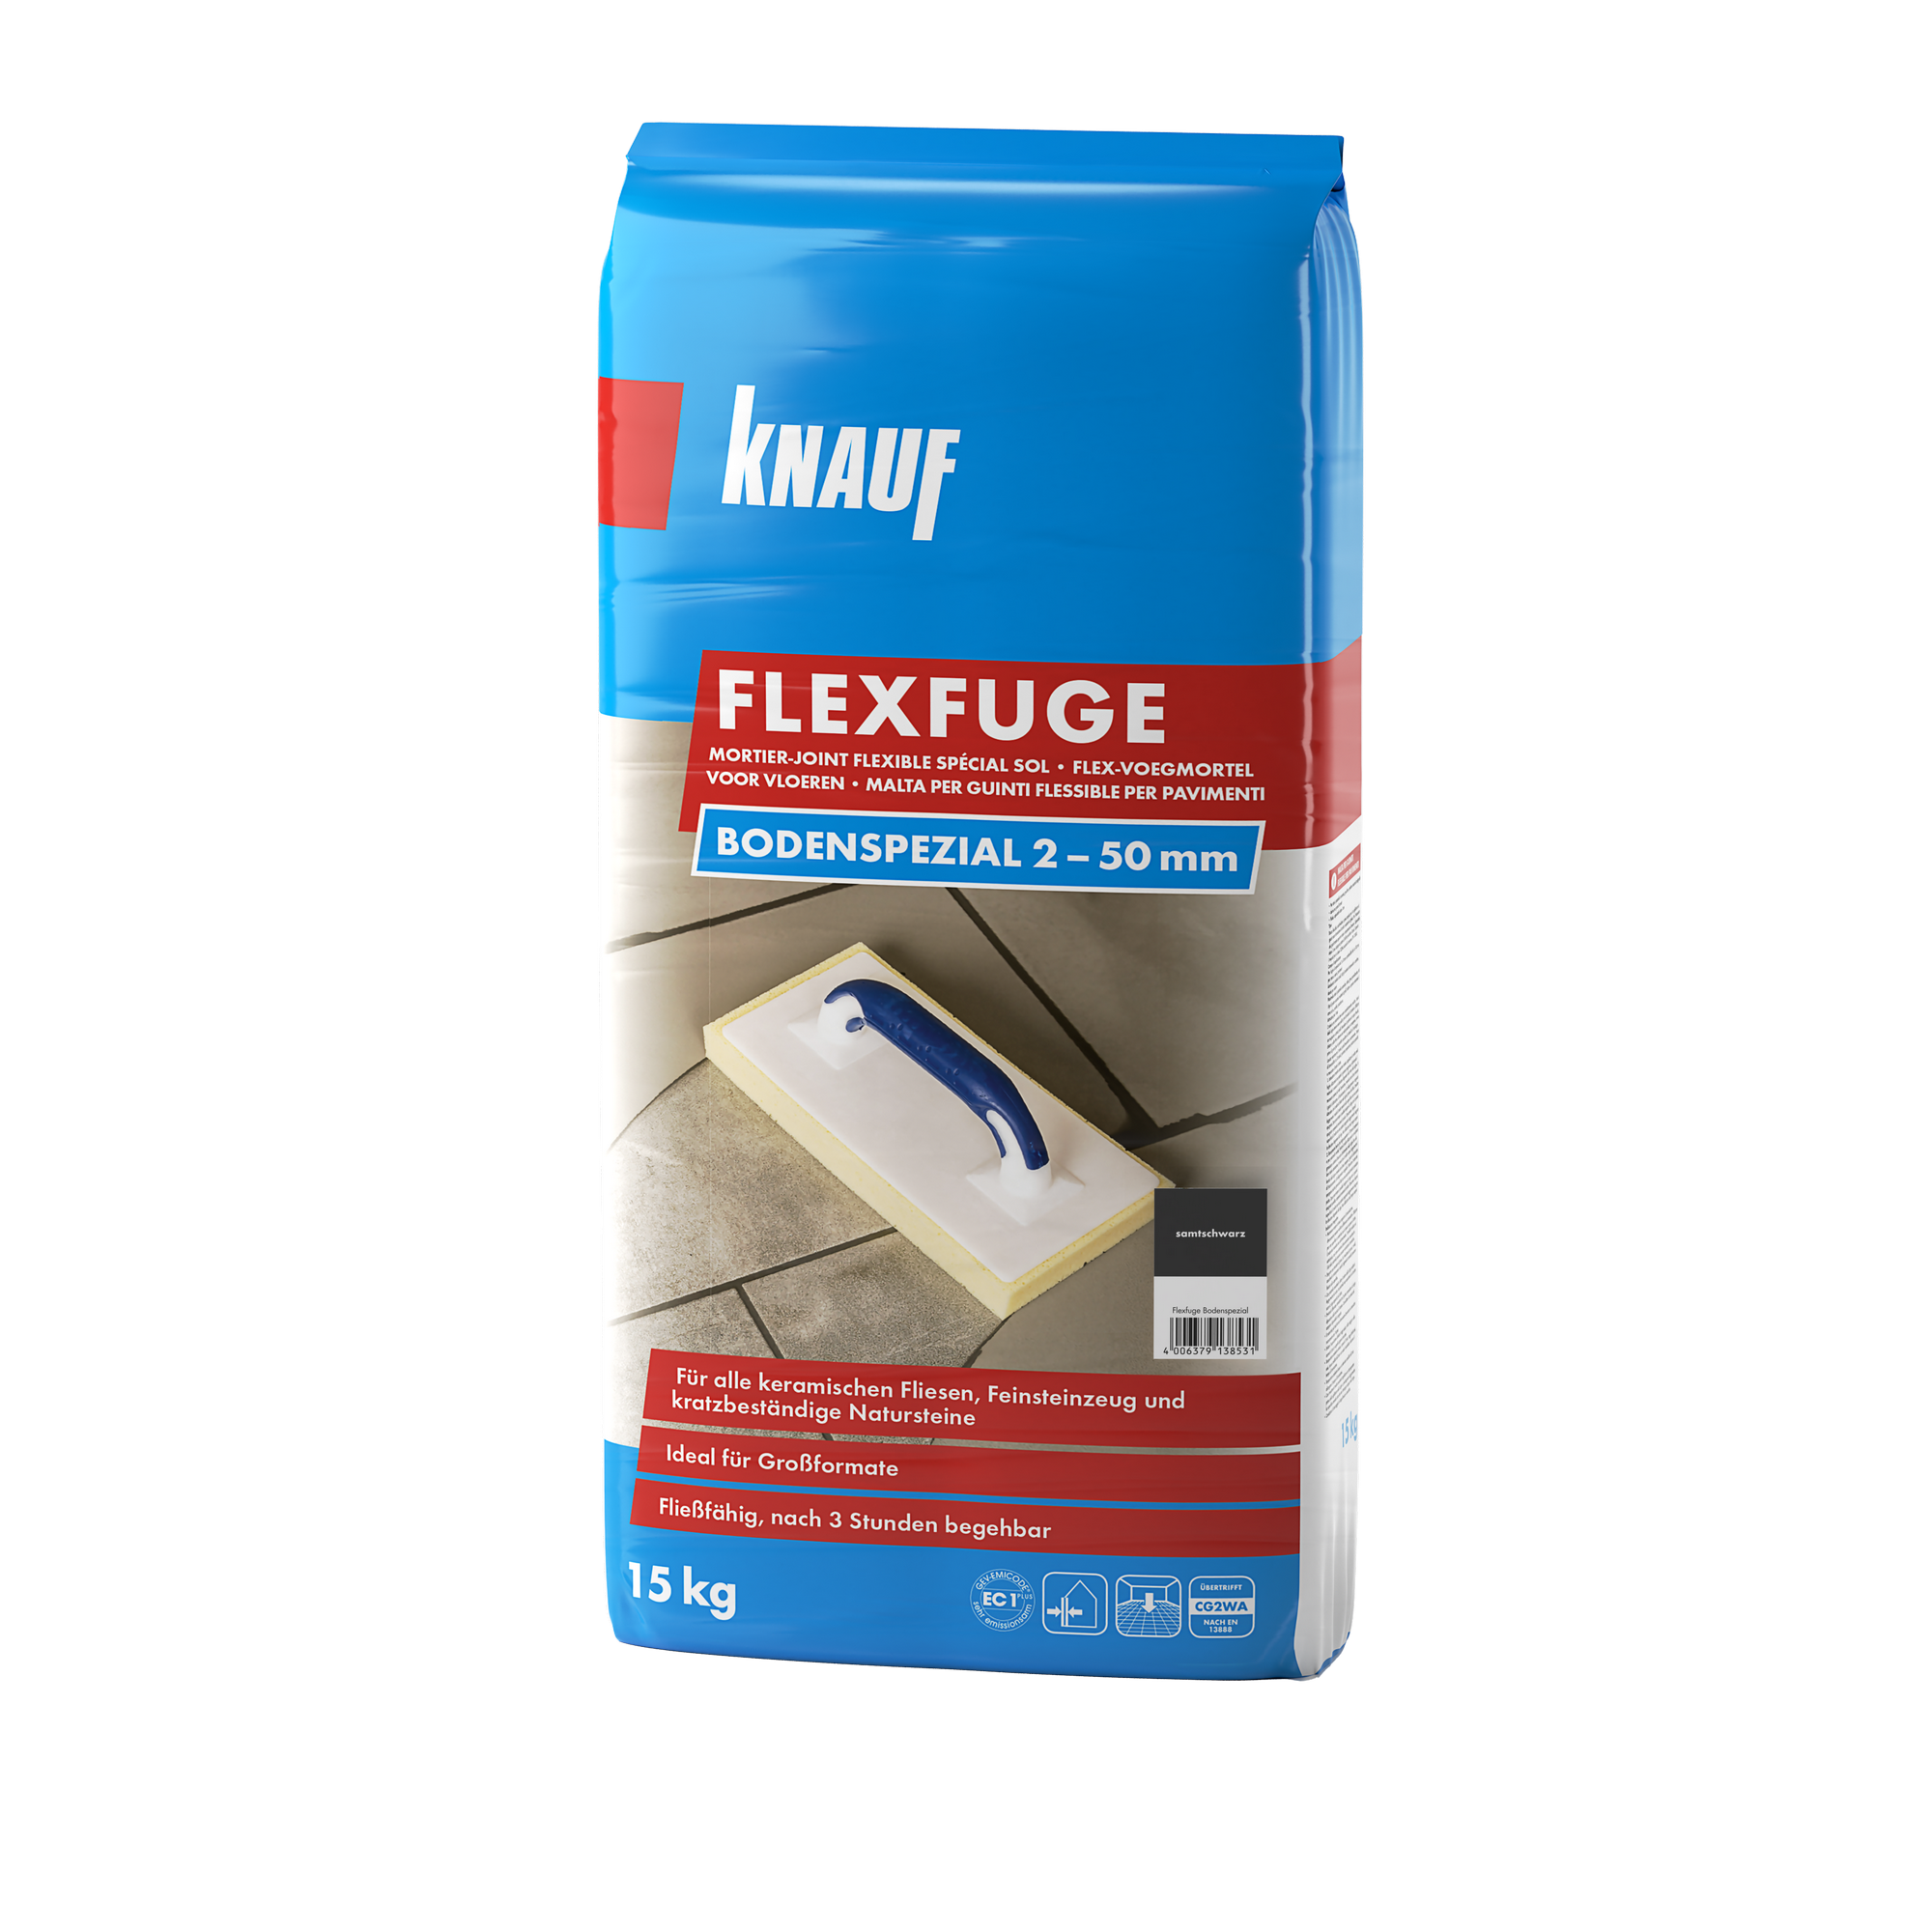 Flexfuge 'Bodenspezial' samtschwarz 15 kg + product picture